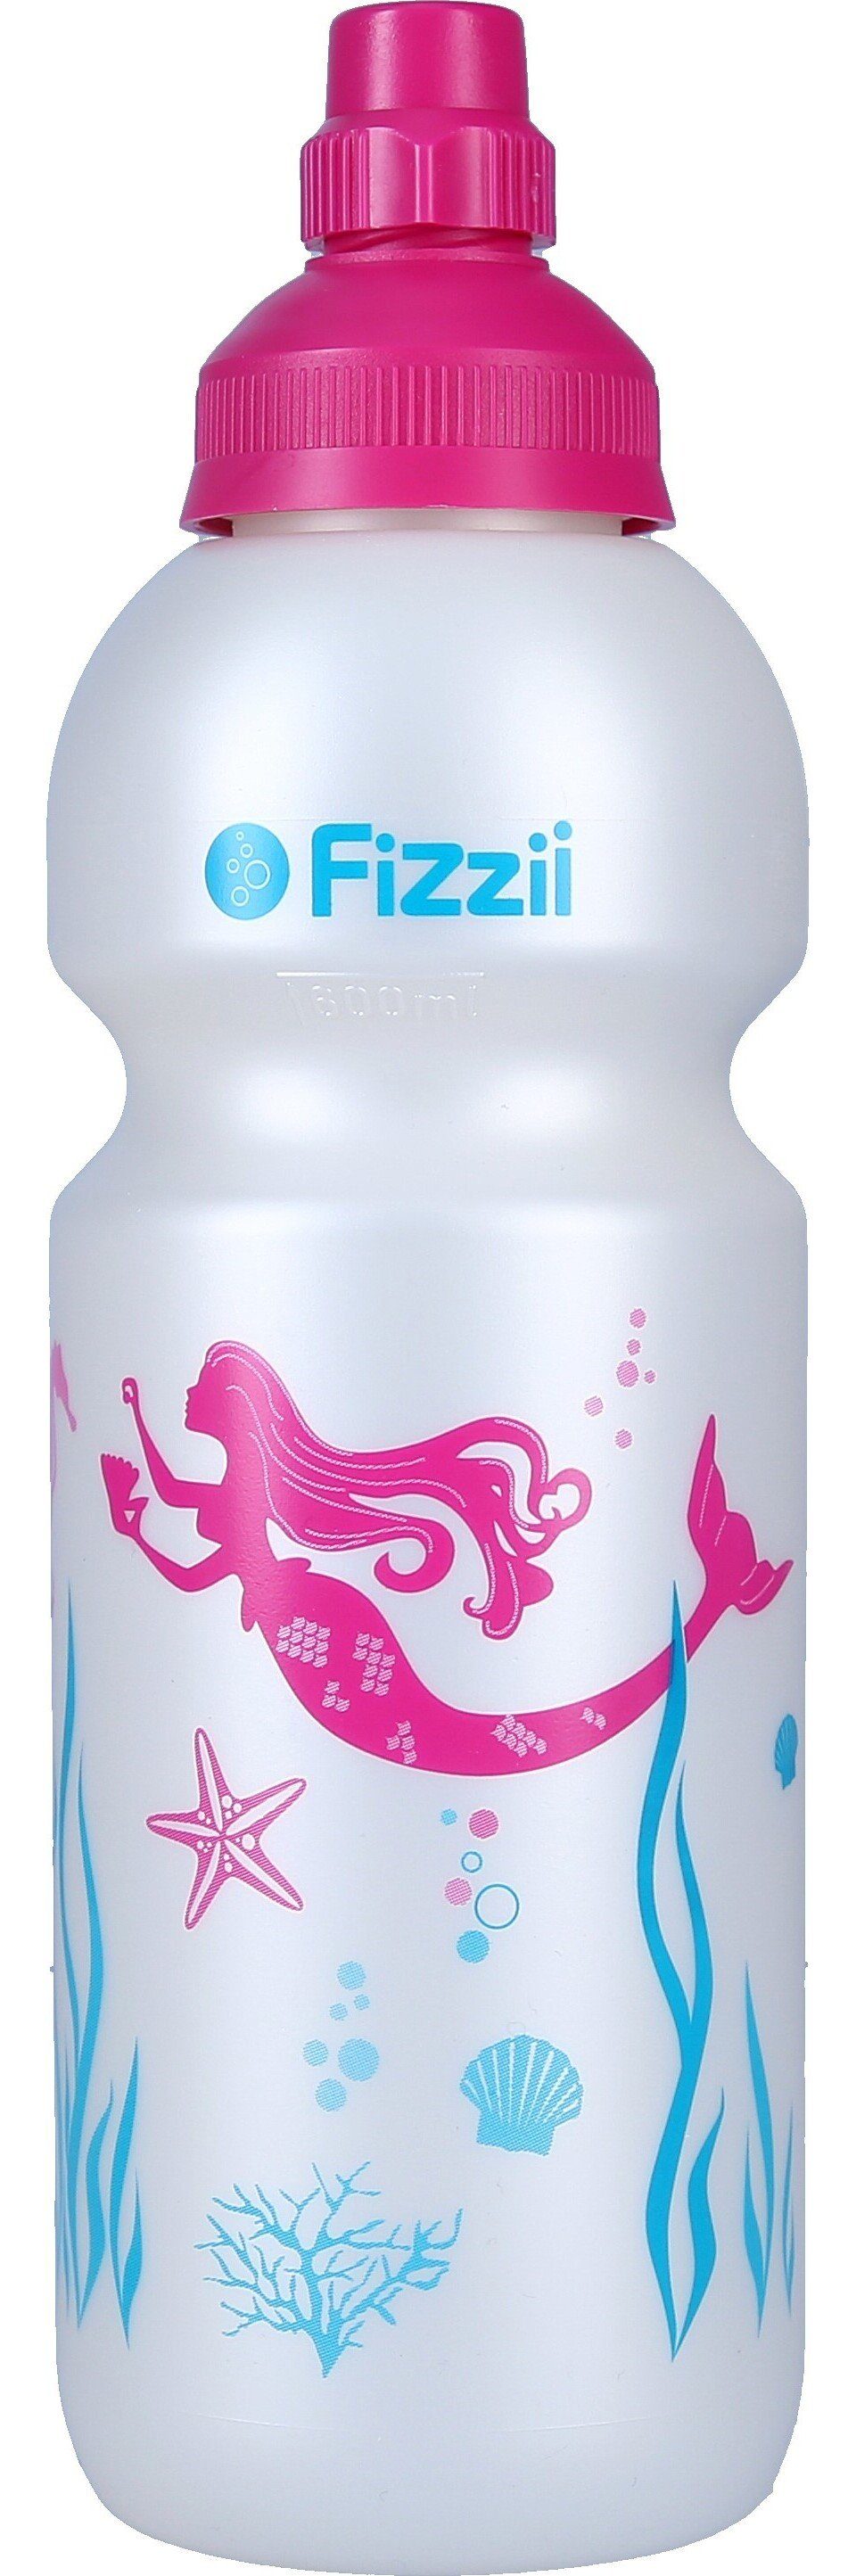 Fizzii Trinkflasche Kinderflasche Sprudelsicher, FIZZII 330 oder 600 ml  Trinkflasche Kinderflasche